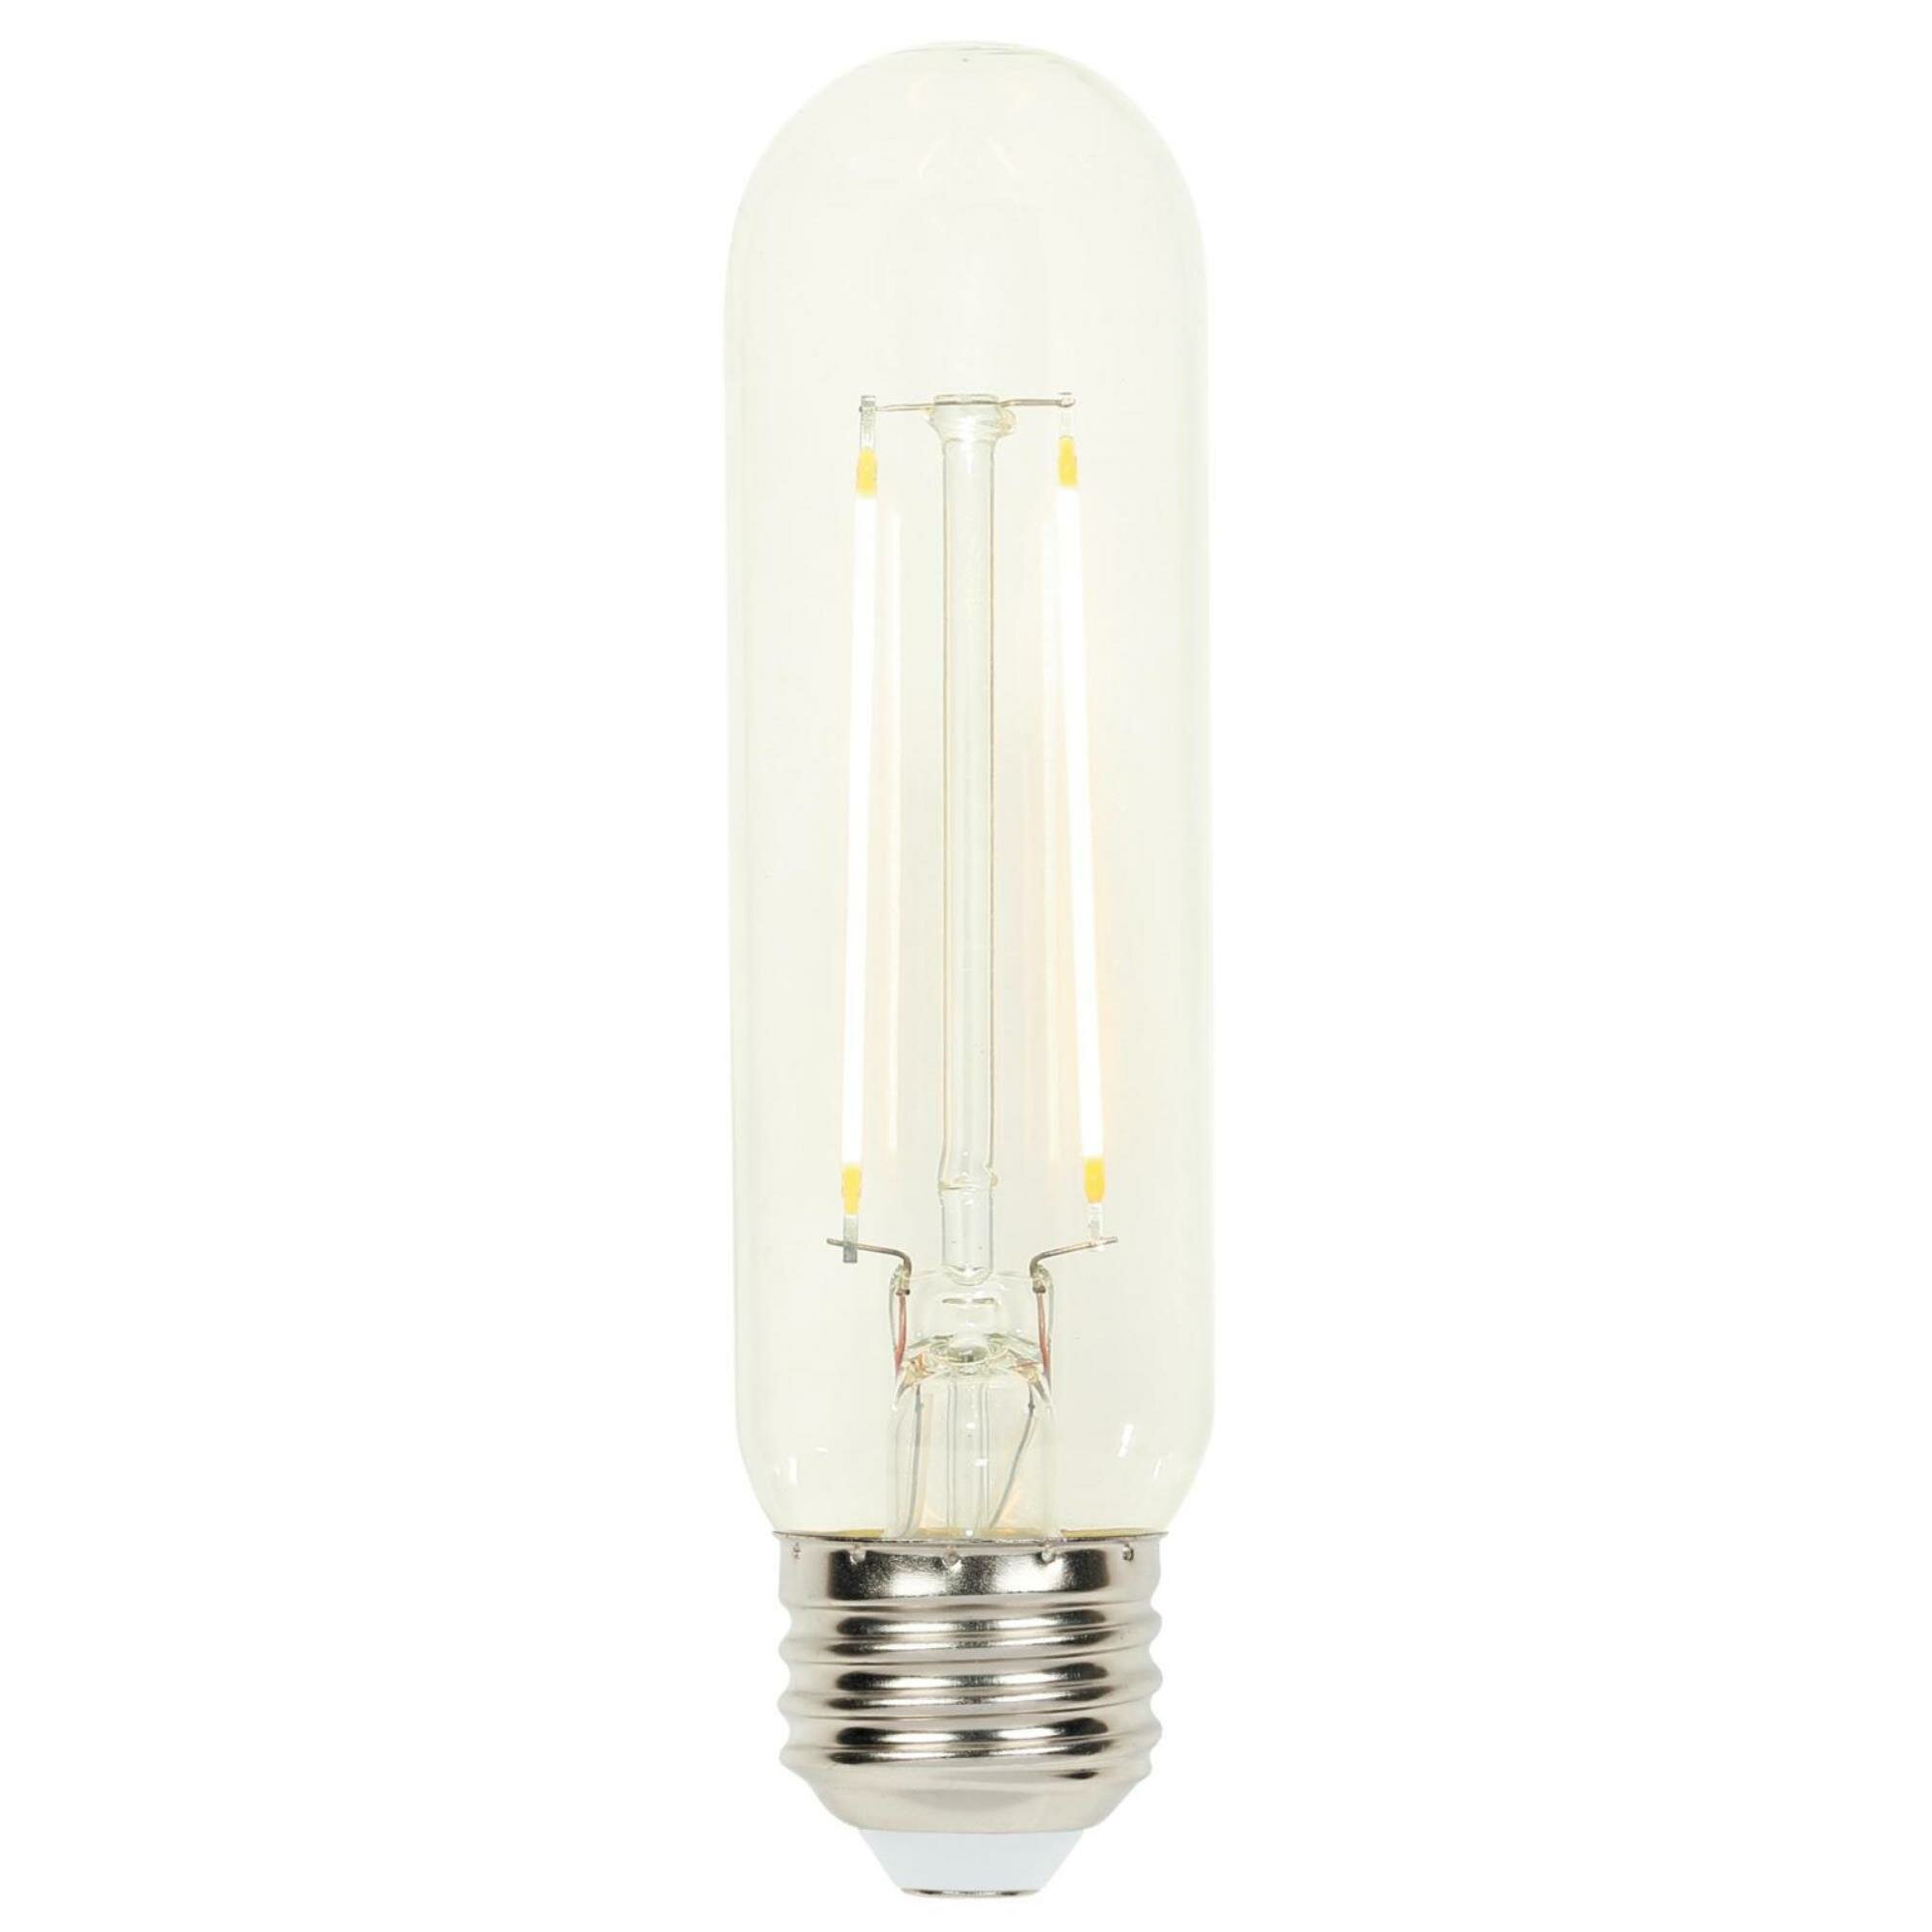 Westinghouse Lighting 60 Watt Equivalent T10 Led Dimmable Light Bulb Warm White 2700k E26 Base Reviews Wayfair